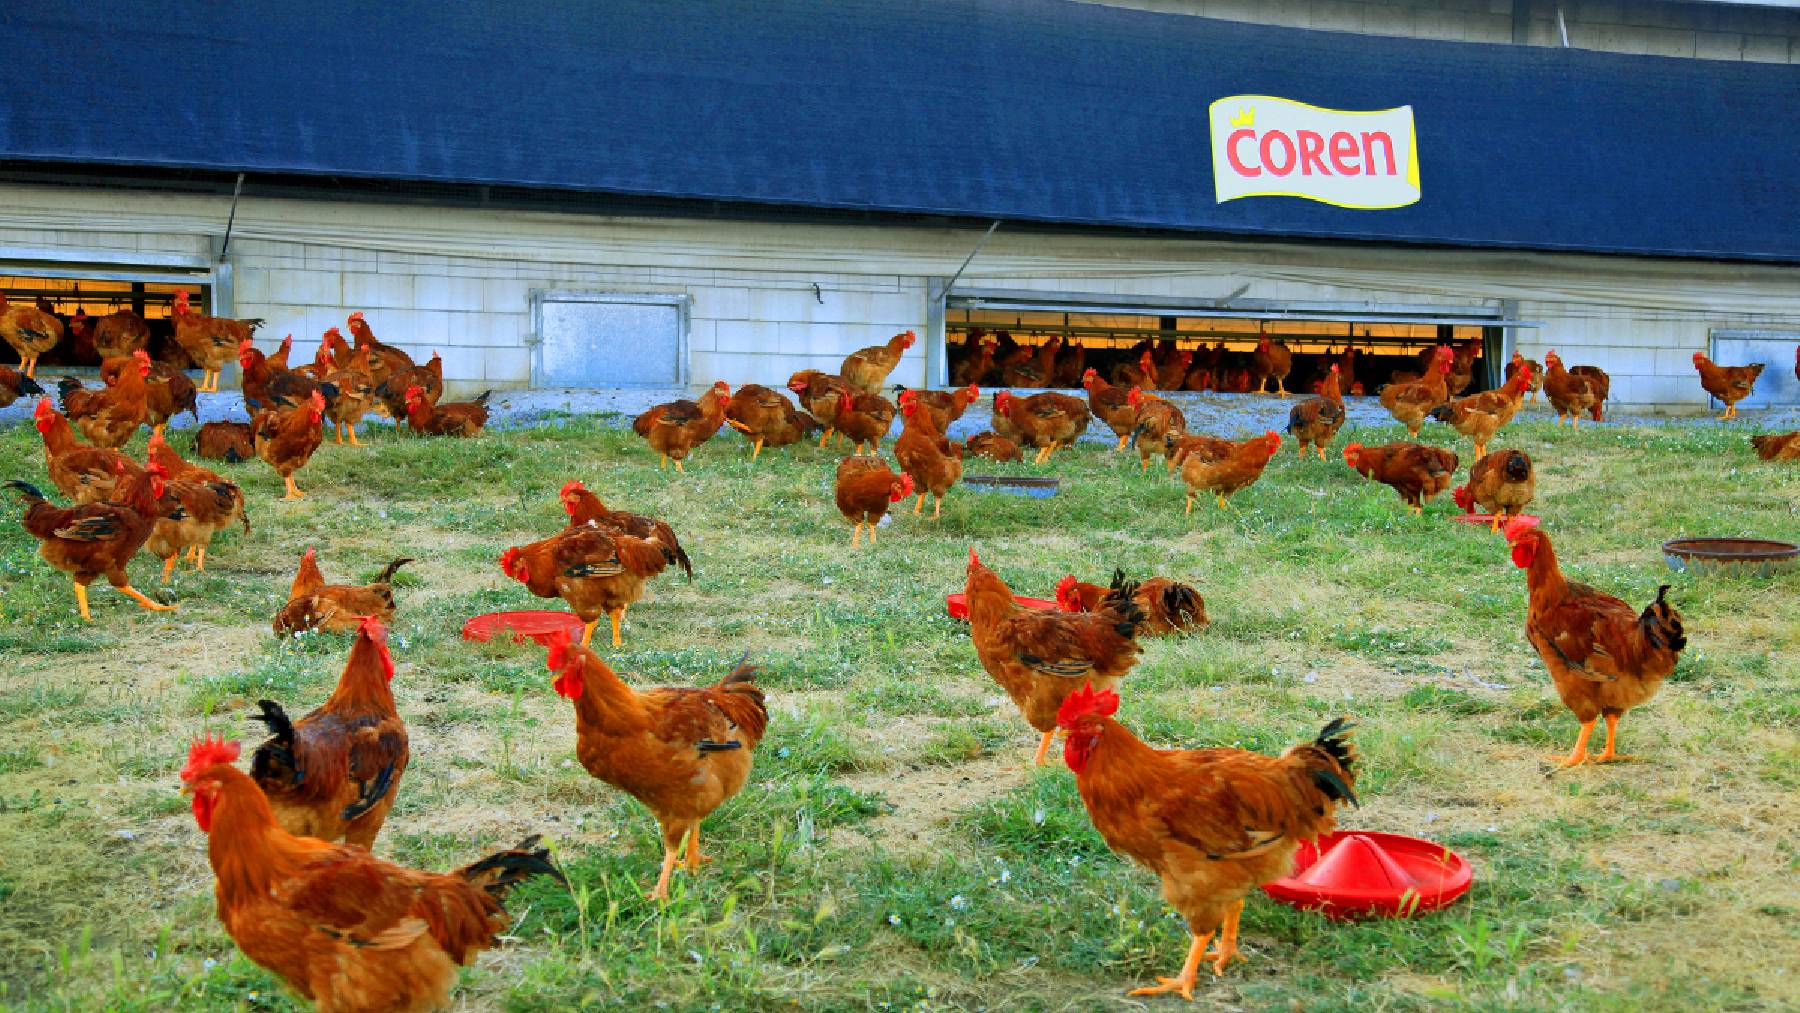 Pollos de Coren.